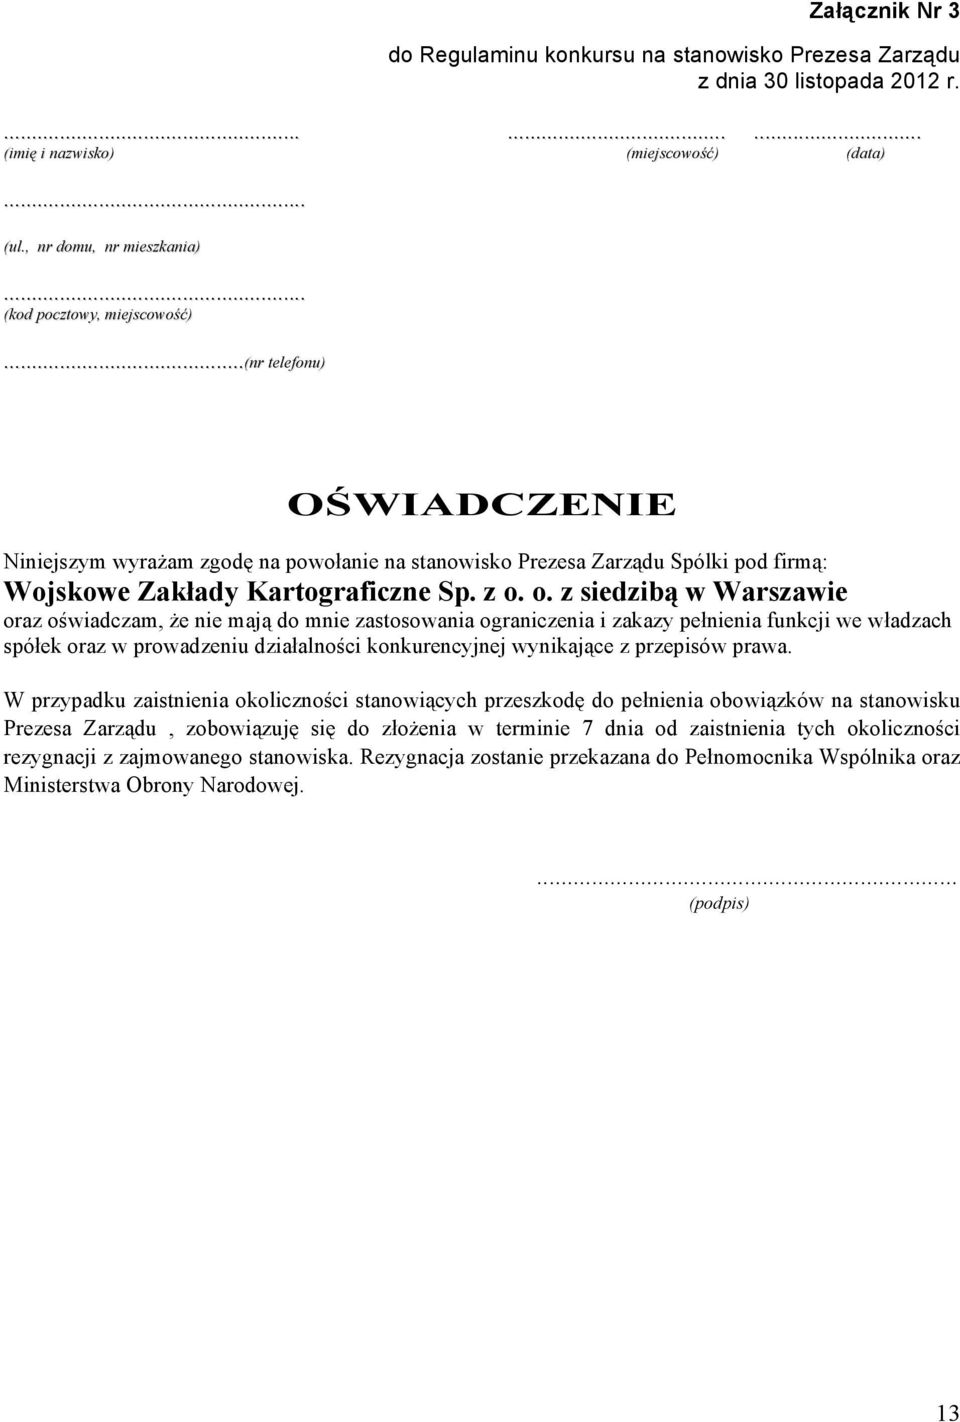 ..(nr telefonu) OŚWIADCZENIE Niniejszym wyrażam zgodę na powołanie na stanowisko Prezesa Zarządu Spólki pod firmą: Wojskowe Zakłady Kartograficzne Sp. z o.